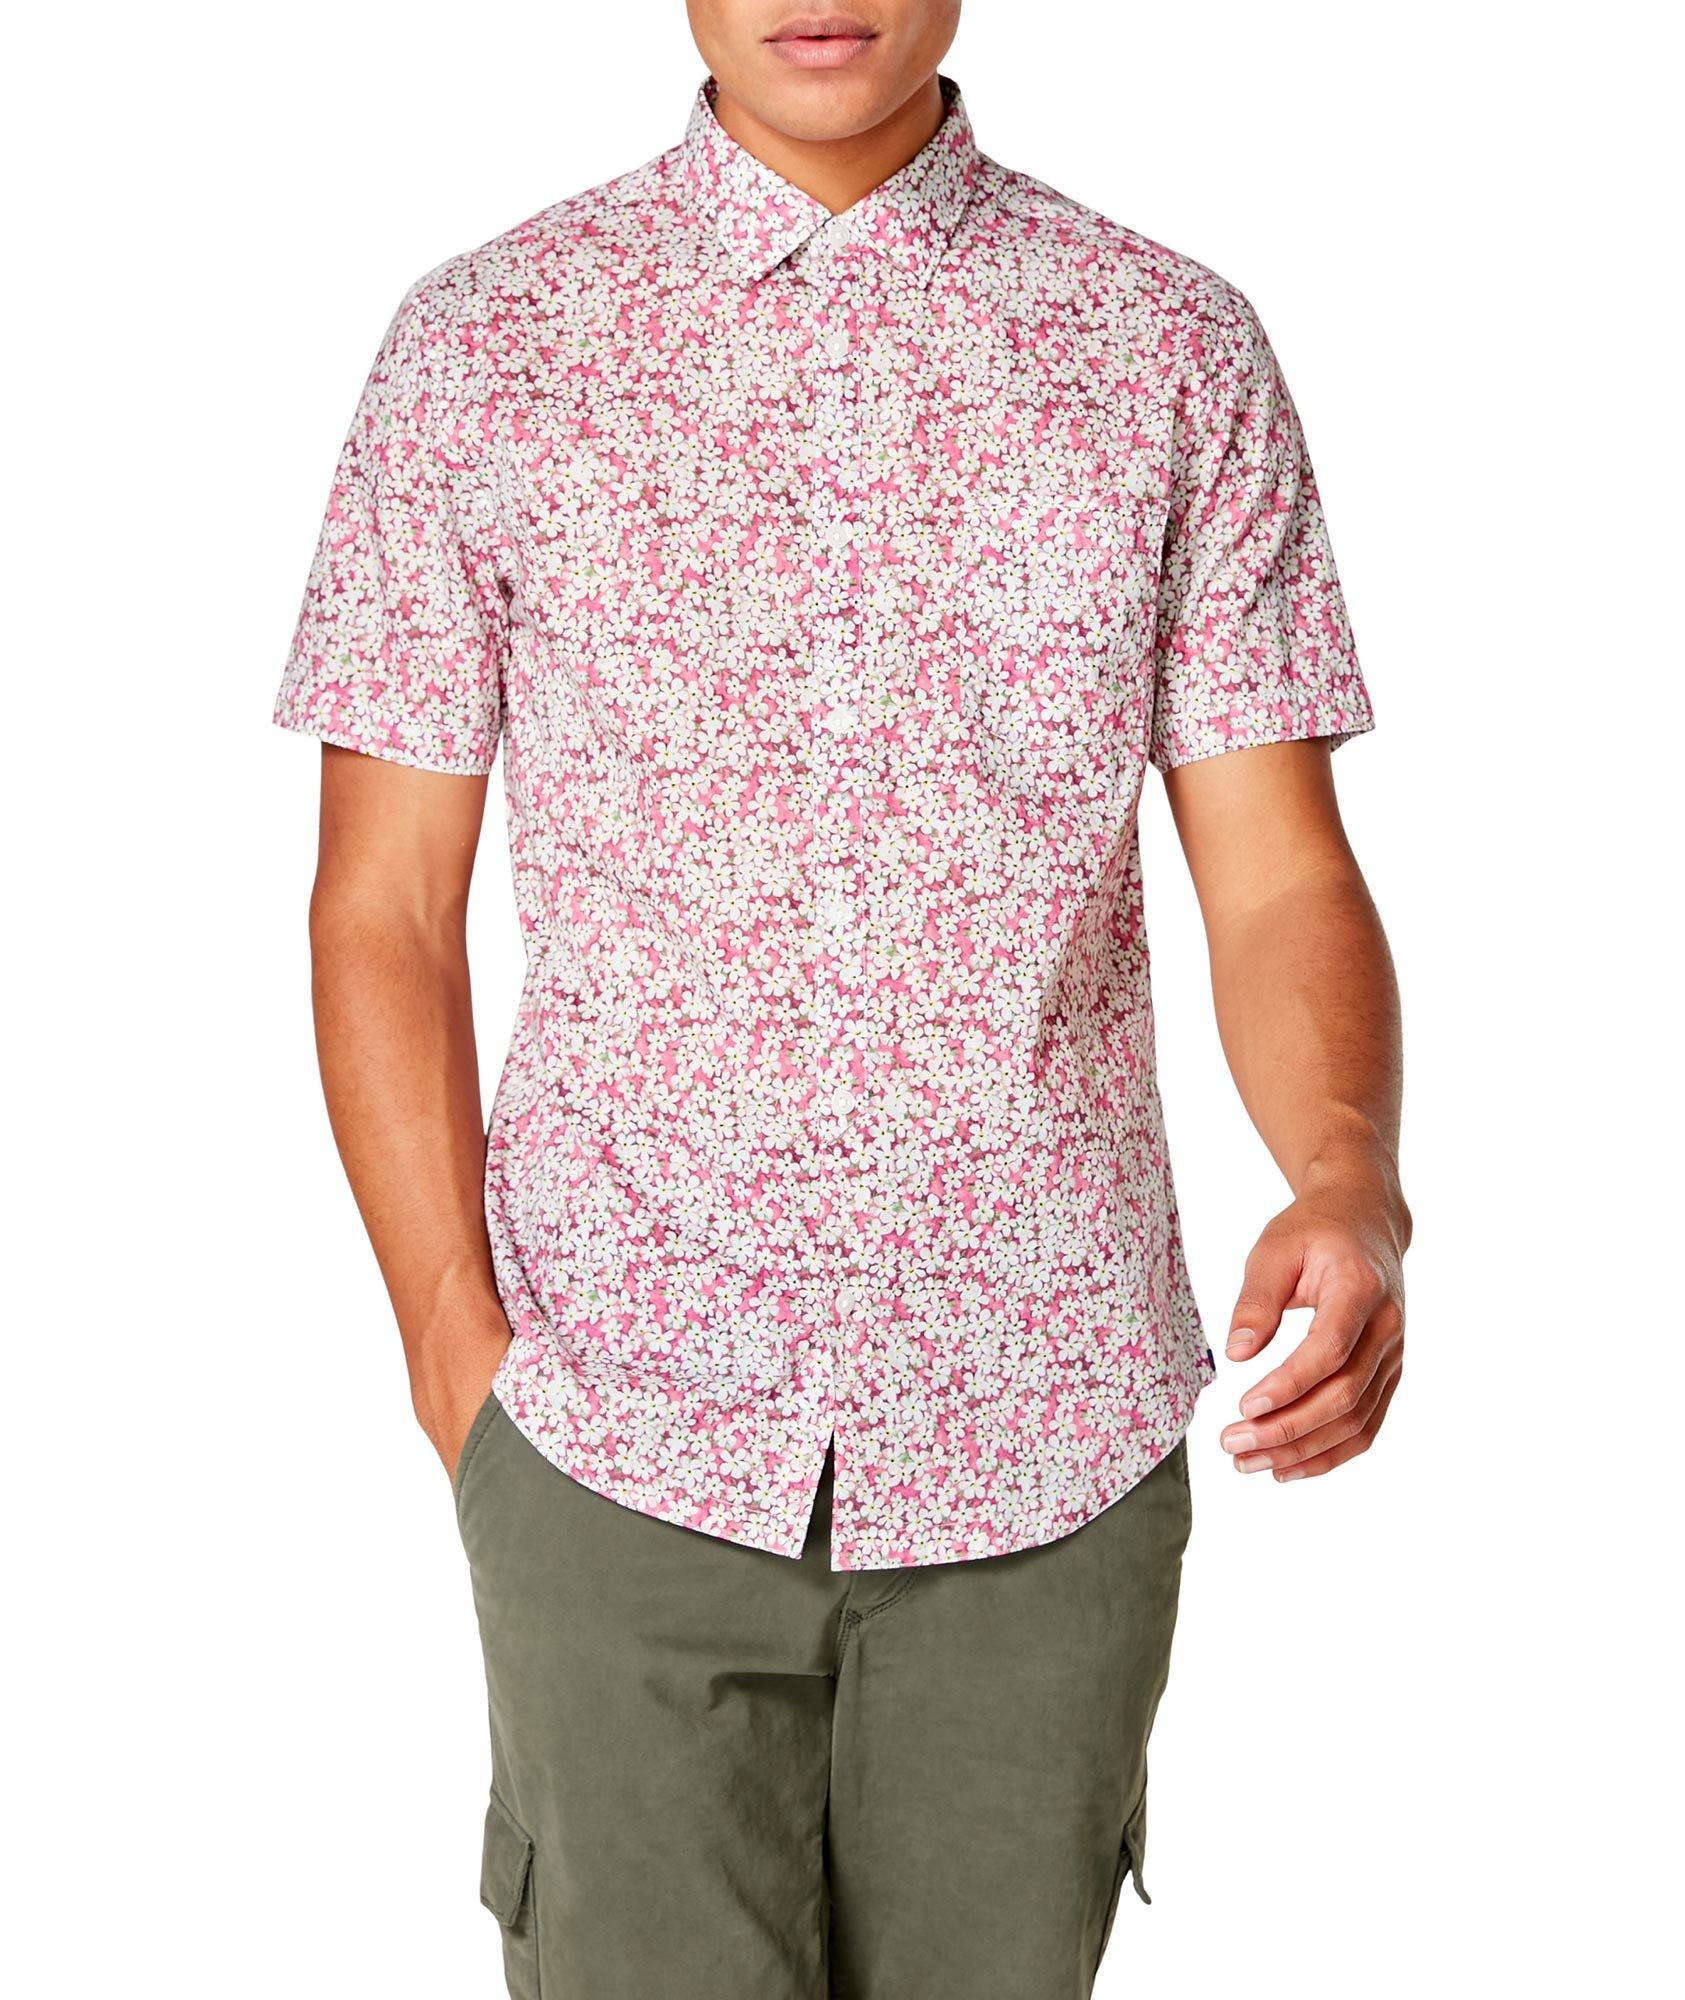 Short-Sleeve Botanical-Printed Shirt image 0